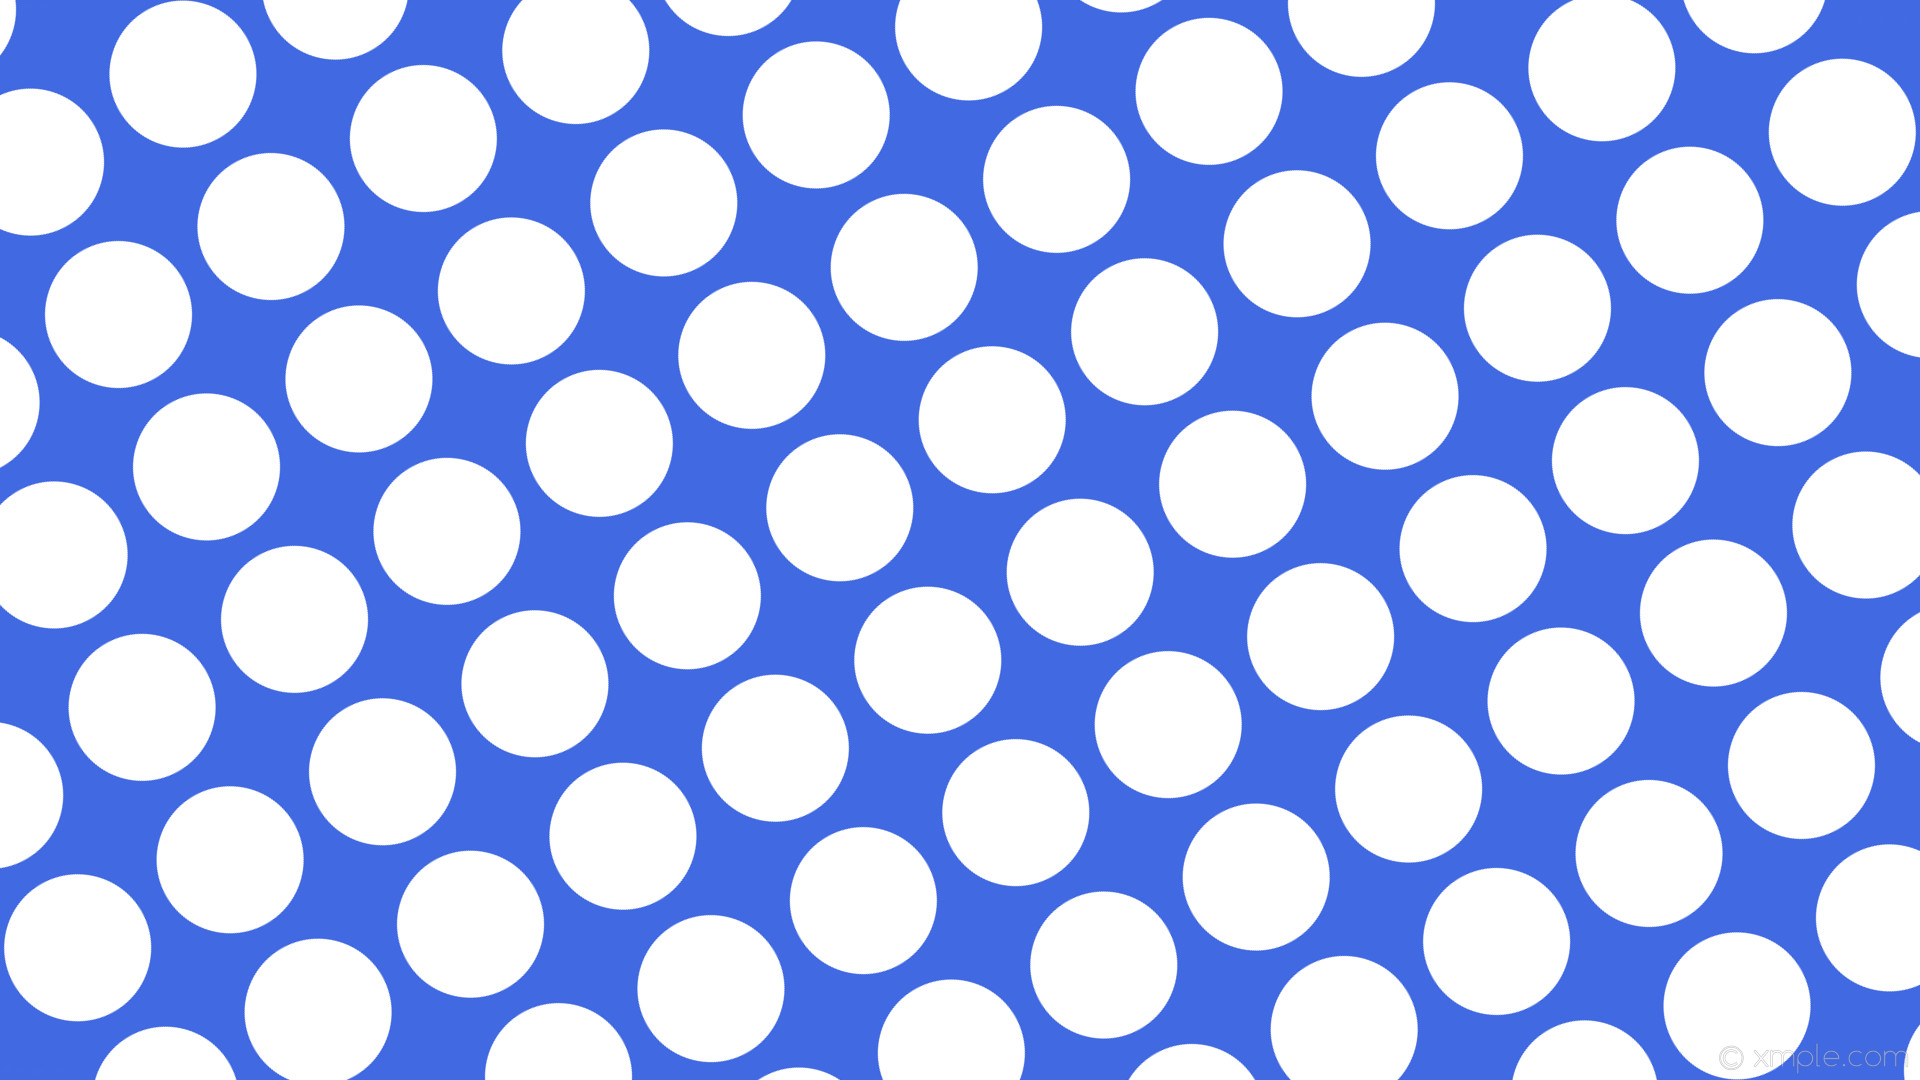 1920x1080 wallpaper blue polka dots spots white royal blue #4169e1 #ffffff 30Â° 147px  176px